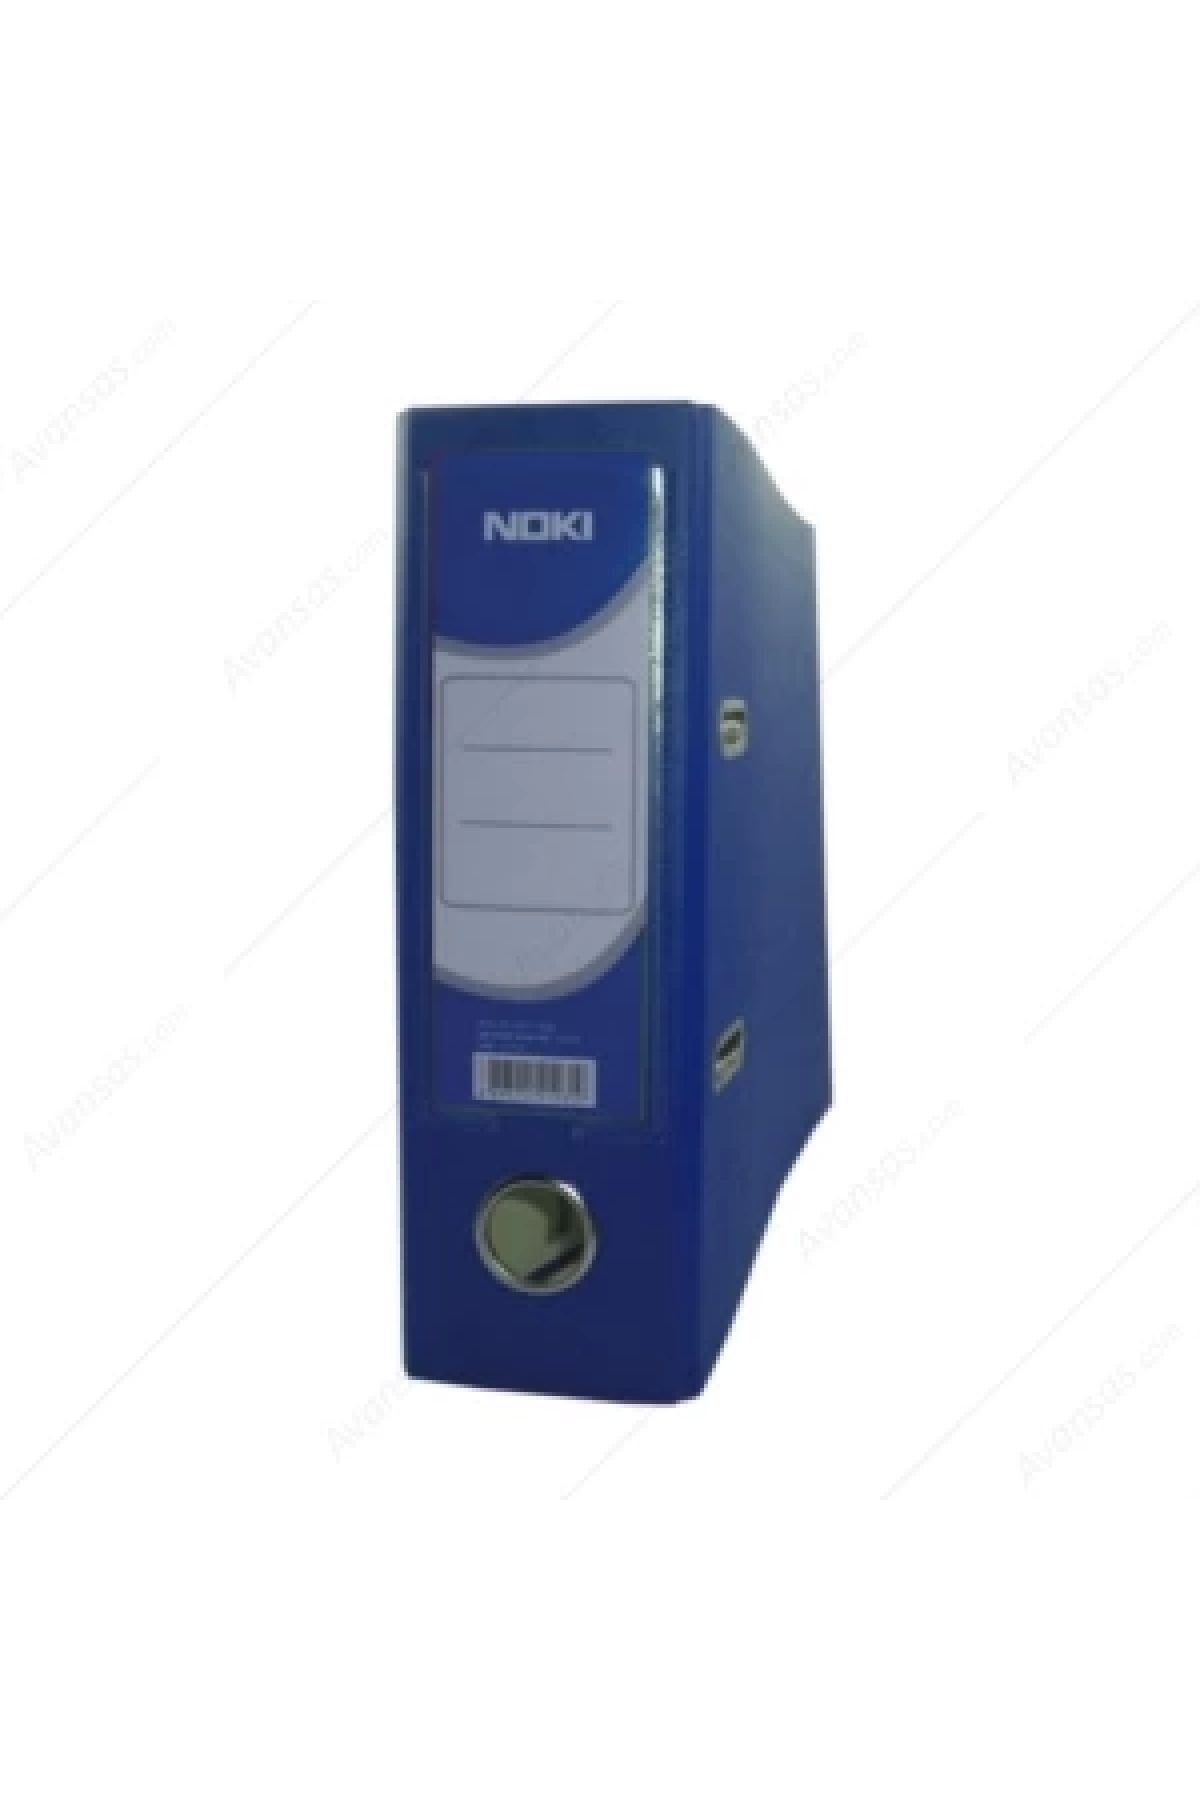 KRAF 1035 Plastik Telgraf Klasörü Geniş Mavi